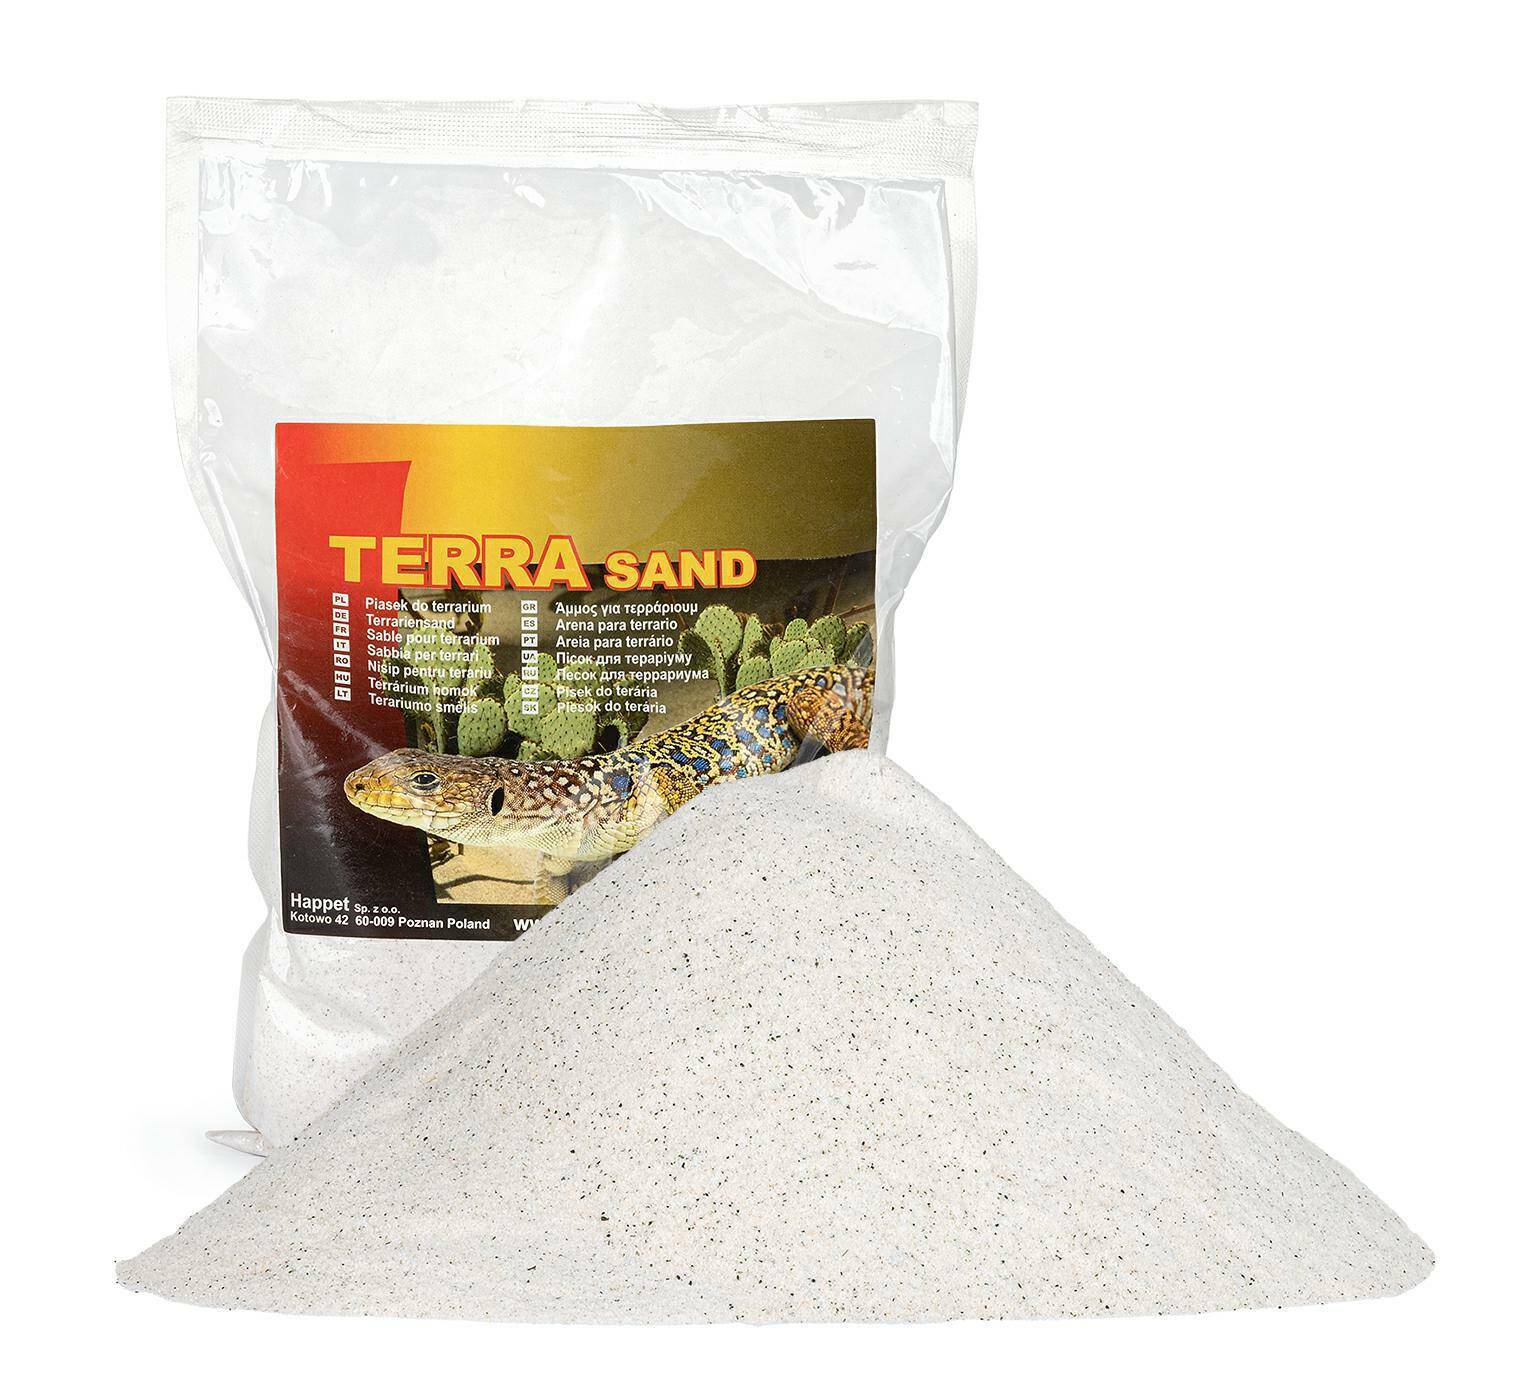 Terrarium Sand, 1kg